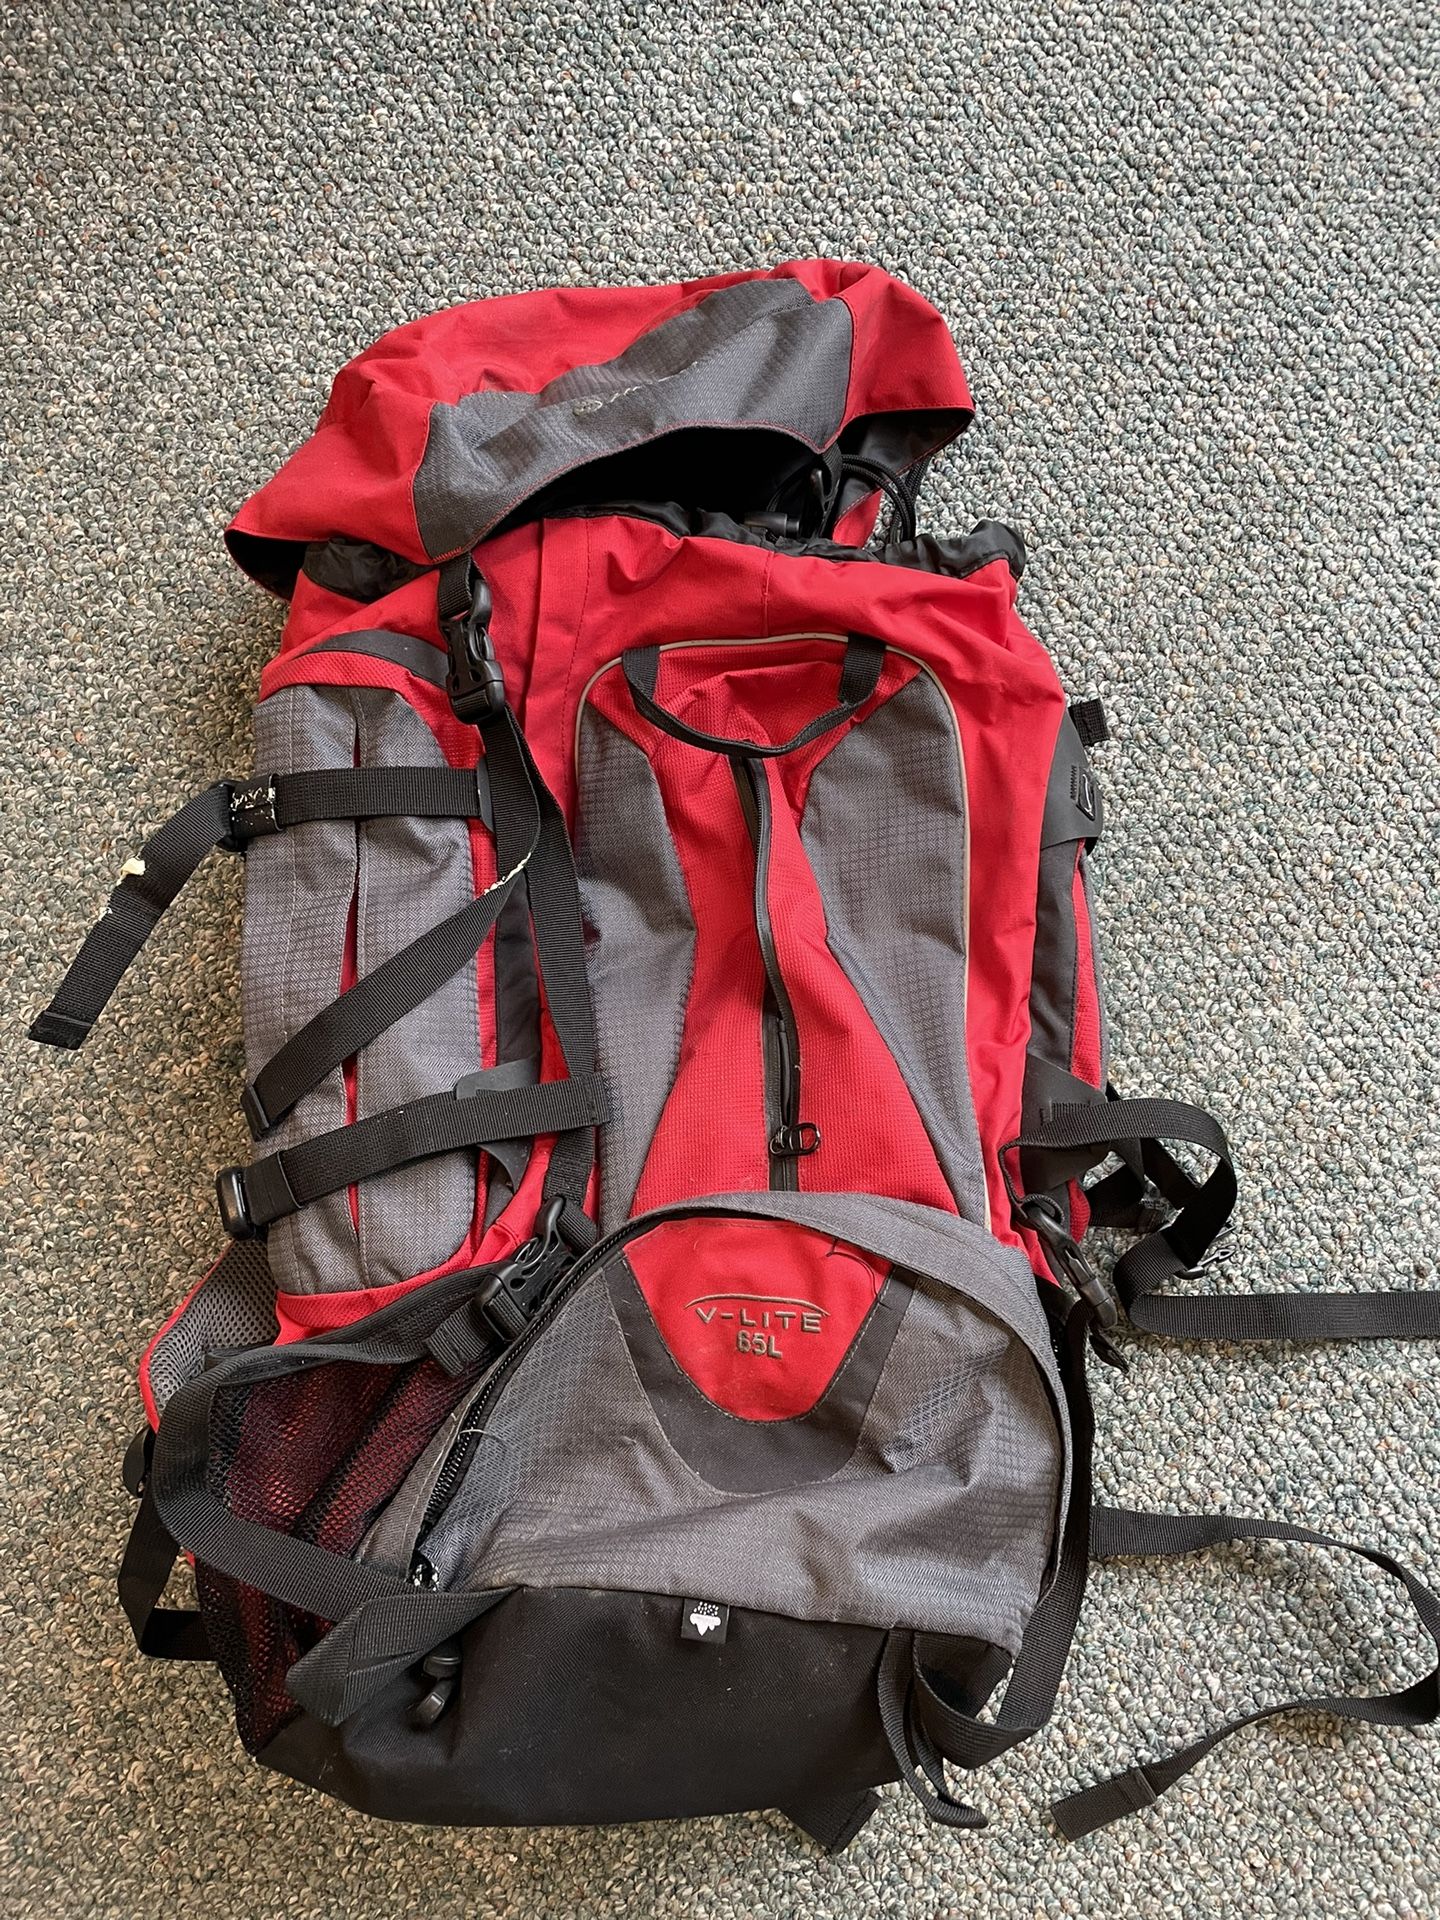 Camping/Backpacking Bag